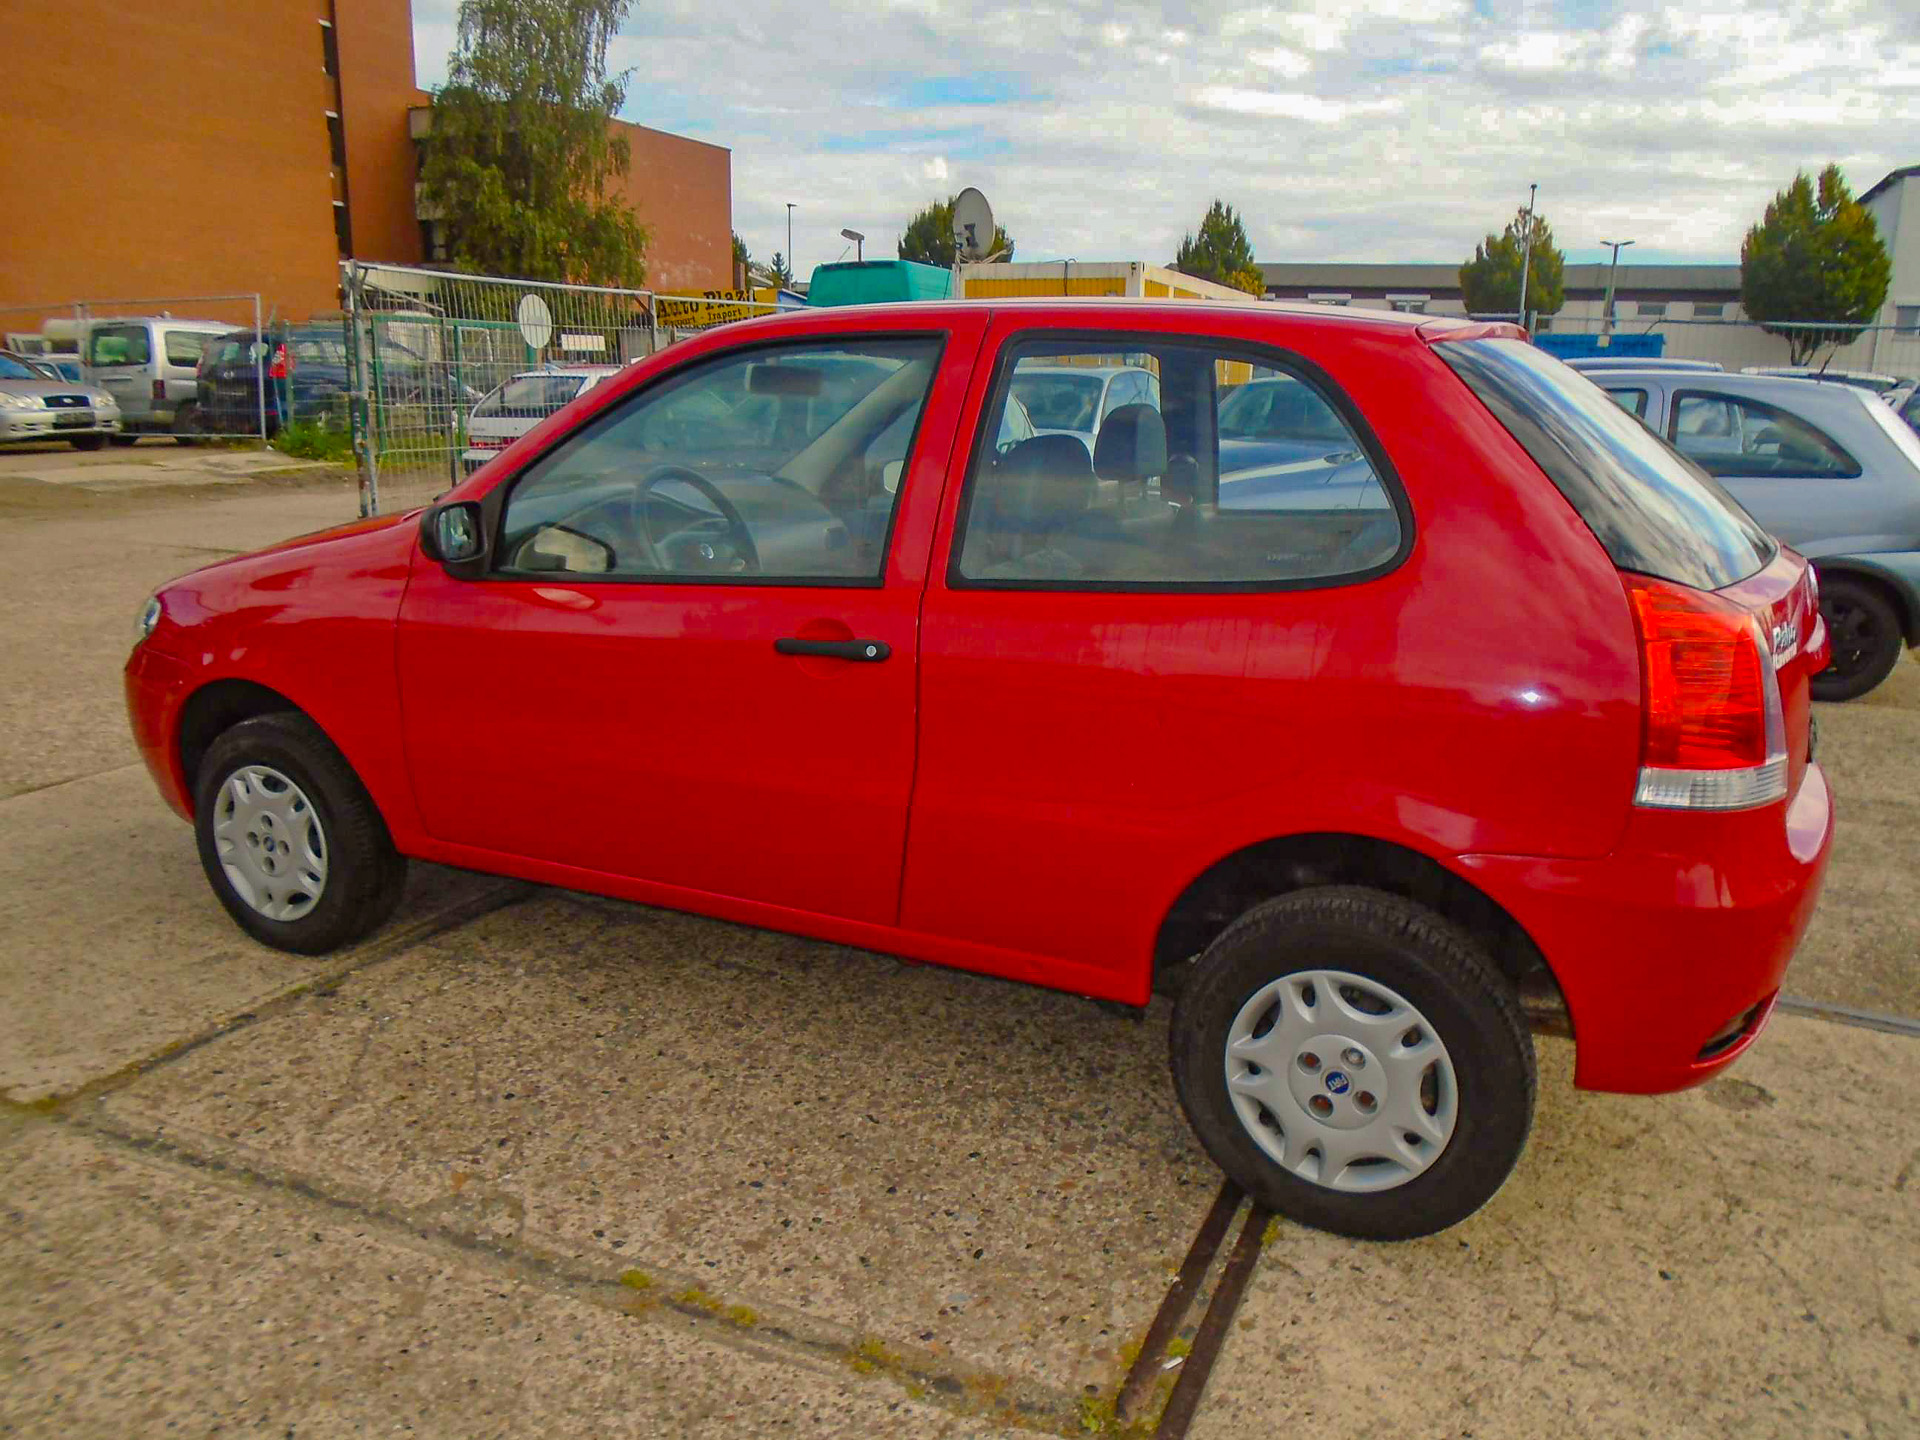 Reportagem encontrou, no Brasil, outros Fiat Palio quase idênticos ao vendido na Alemanha. Sempre mais rodados e mais caros